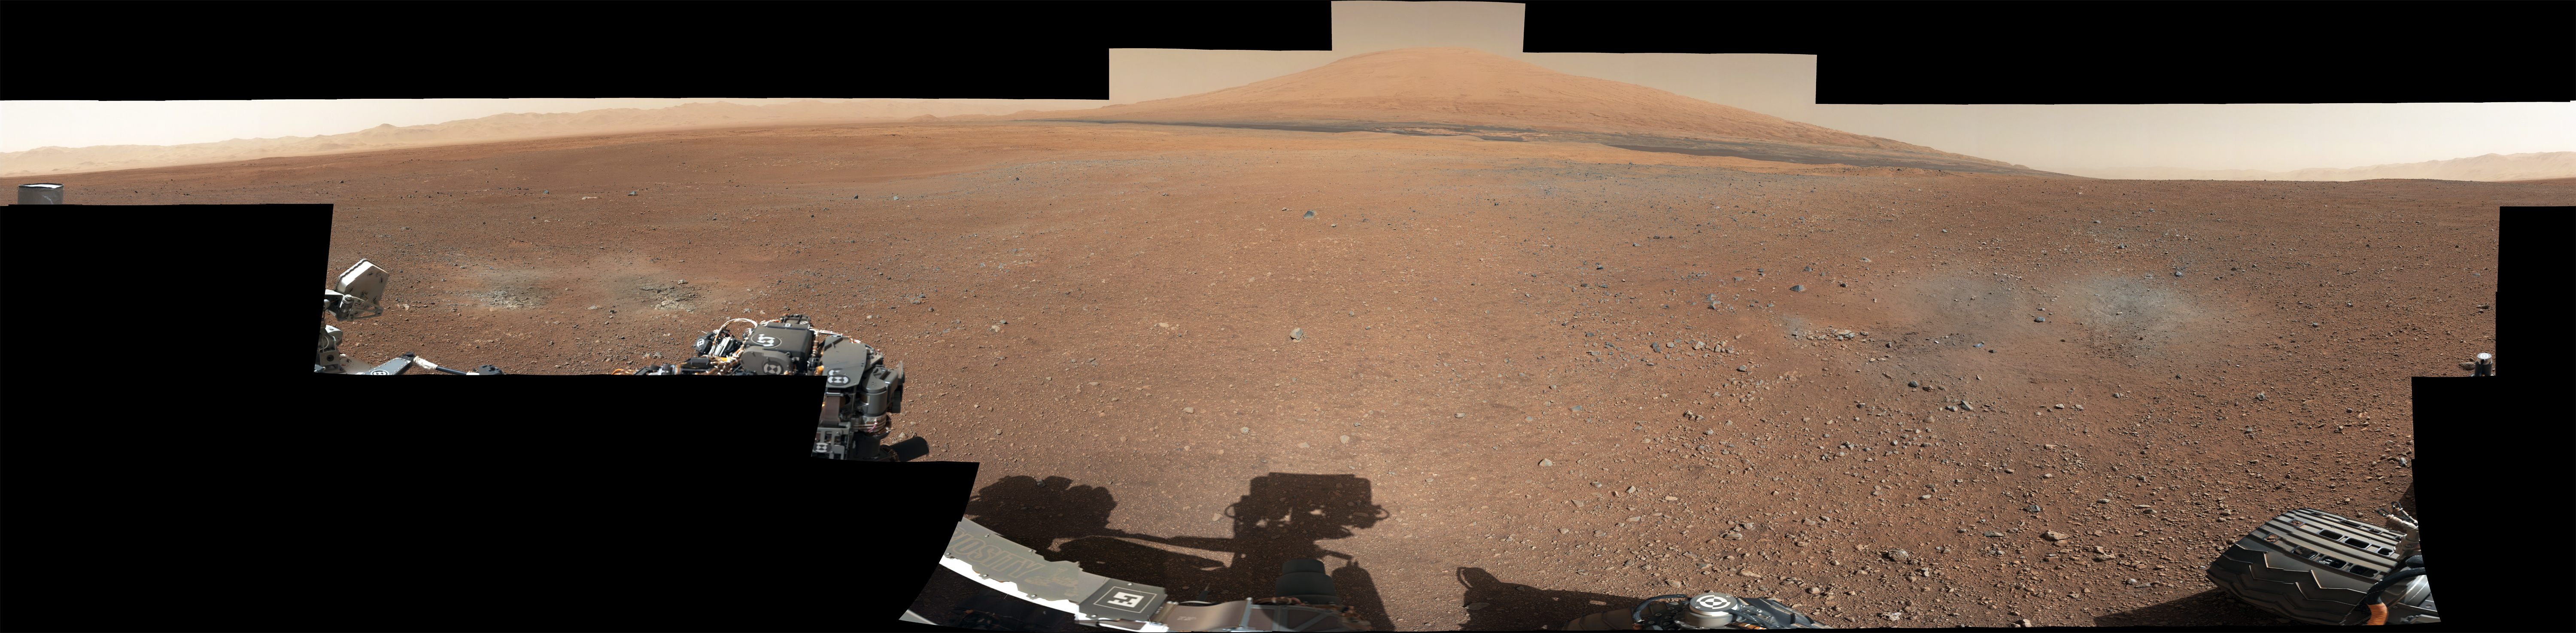 Новая панорама от Curiosity